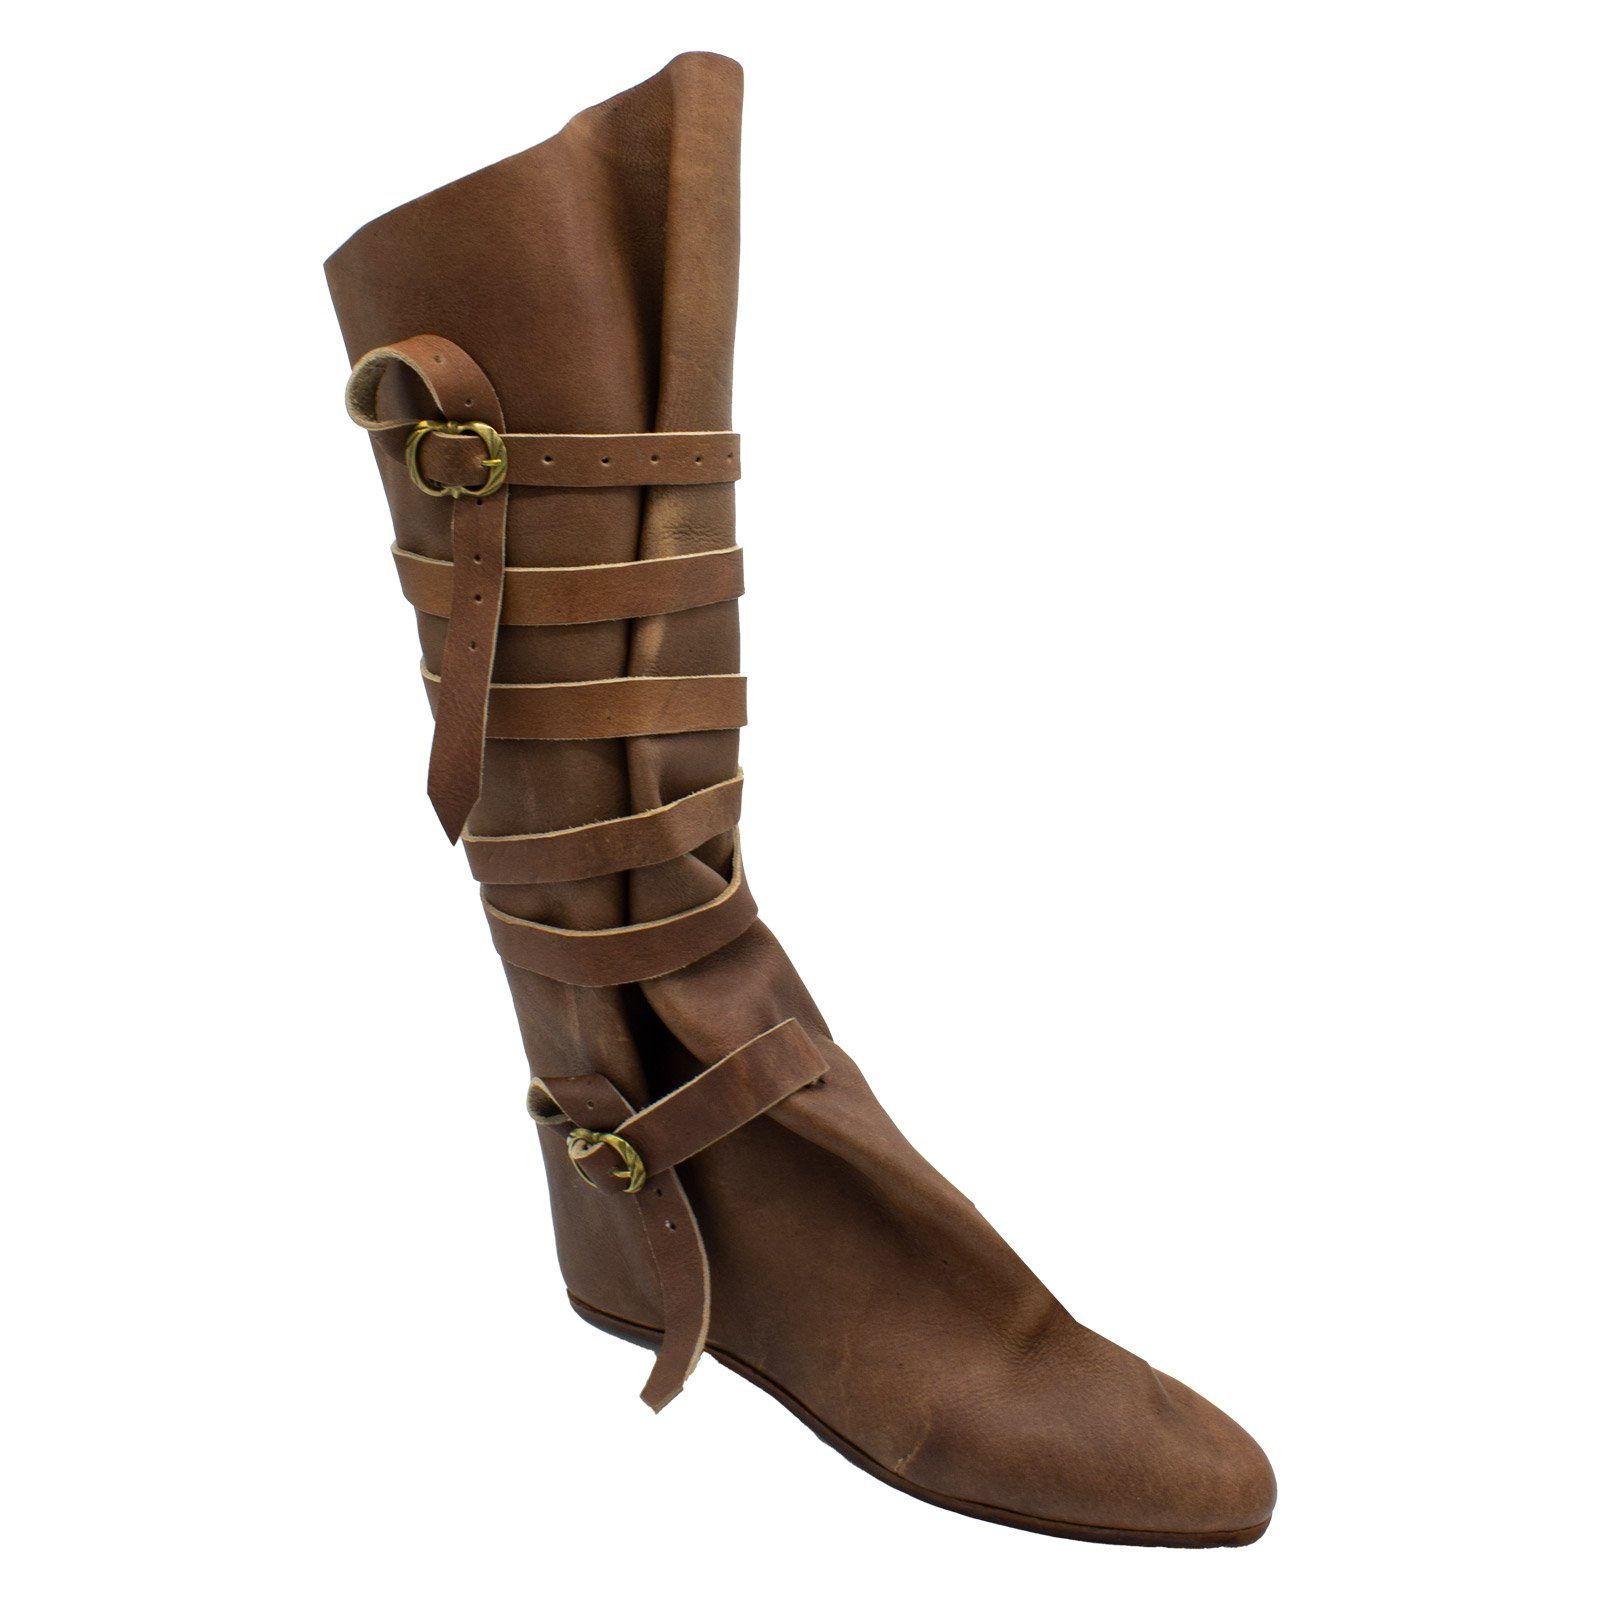 Schuhe Klassische Stiefel Vehi Mercatus Spätmittelalter Stiefel 14.-15. Jahrhundert Stiefel